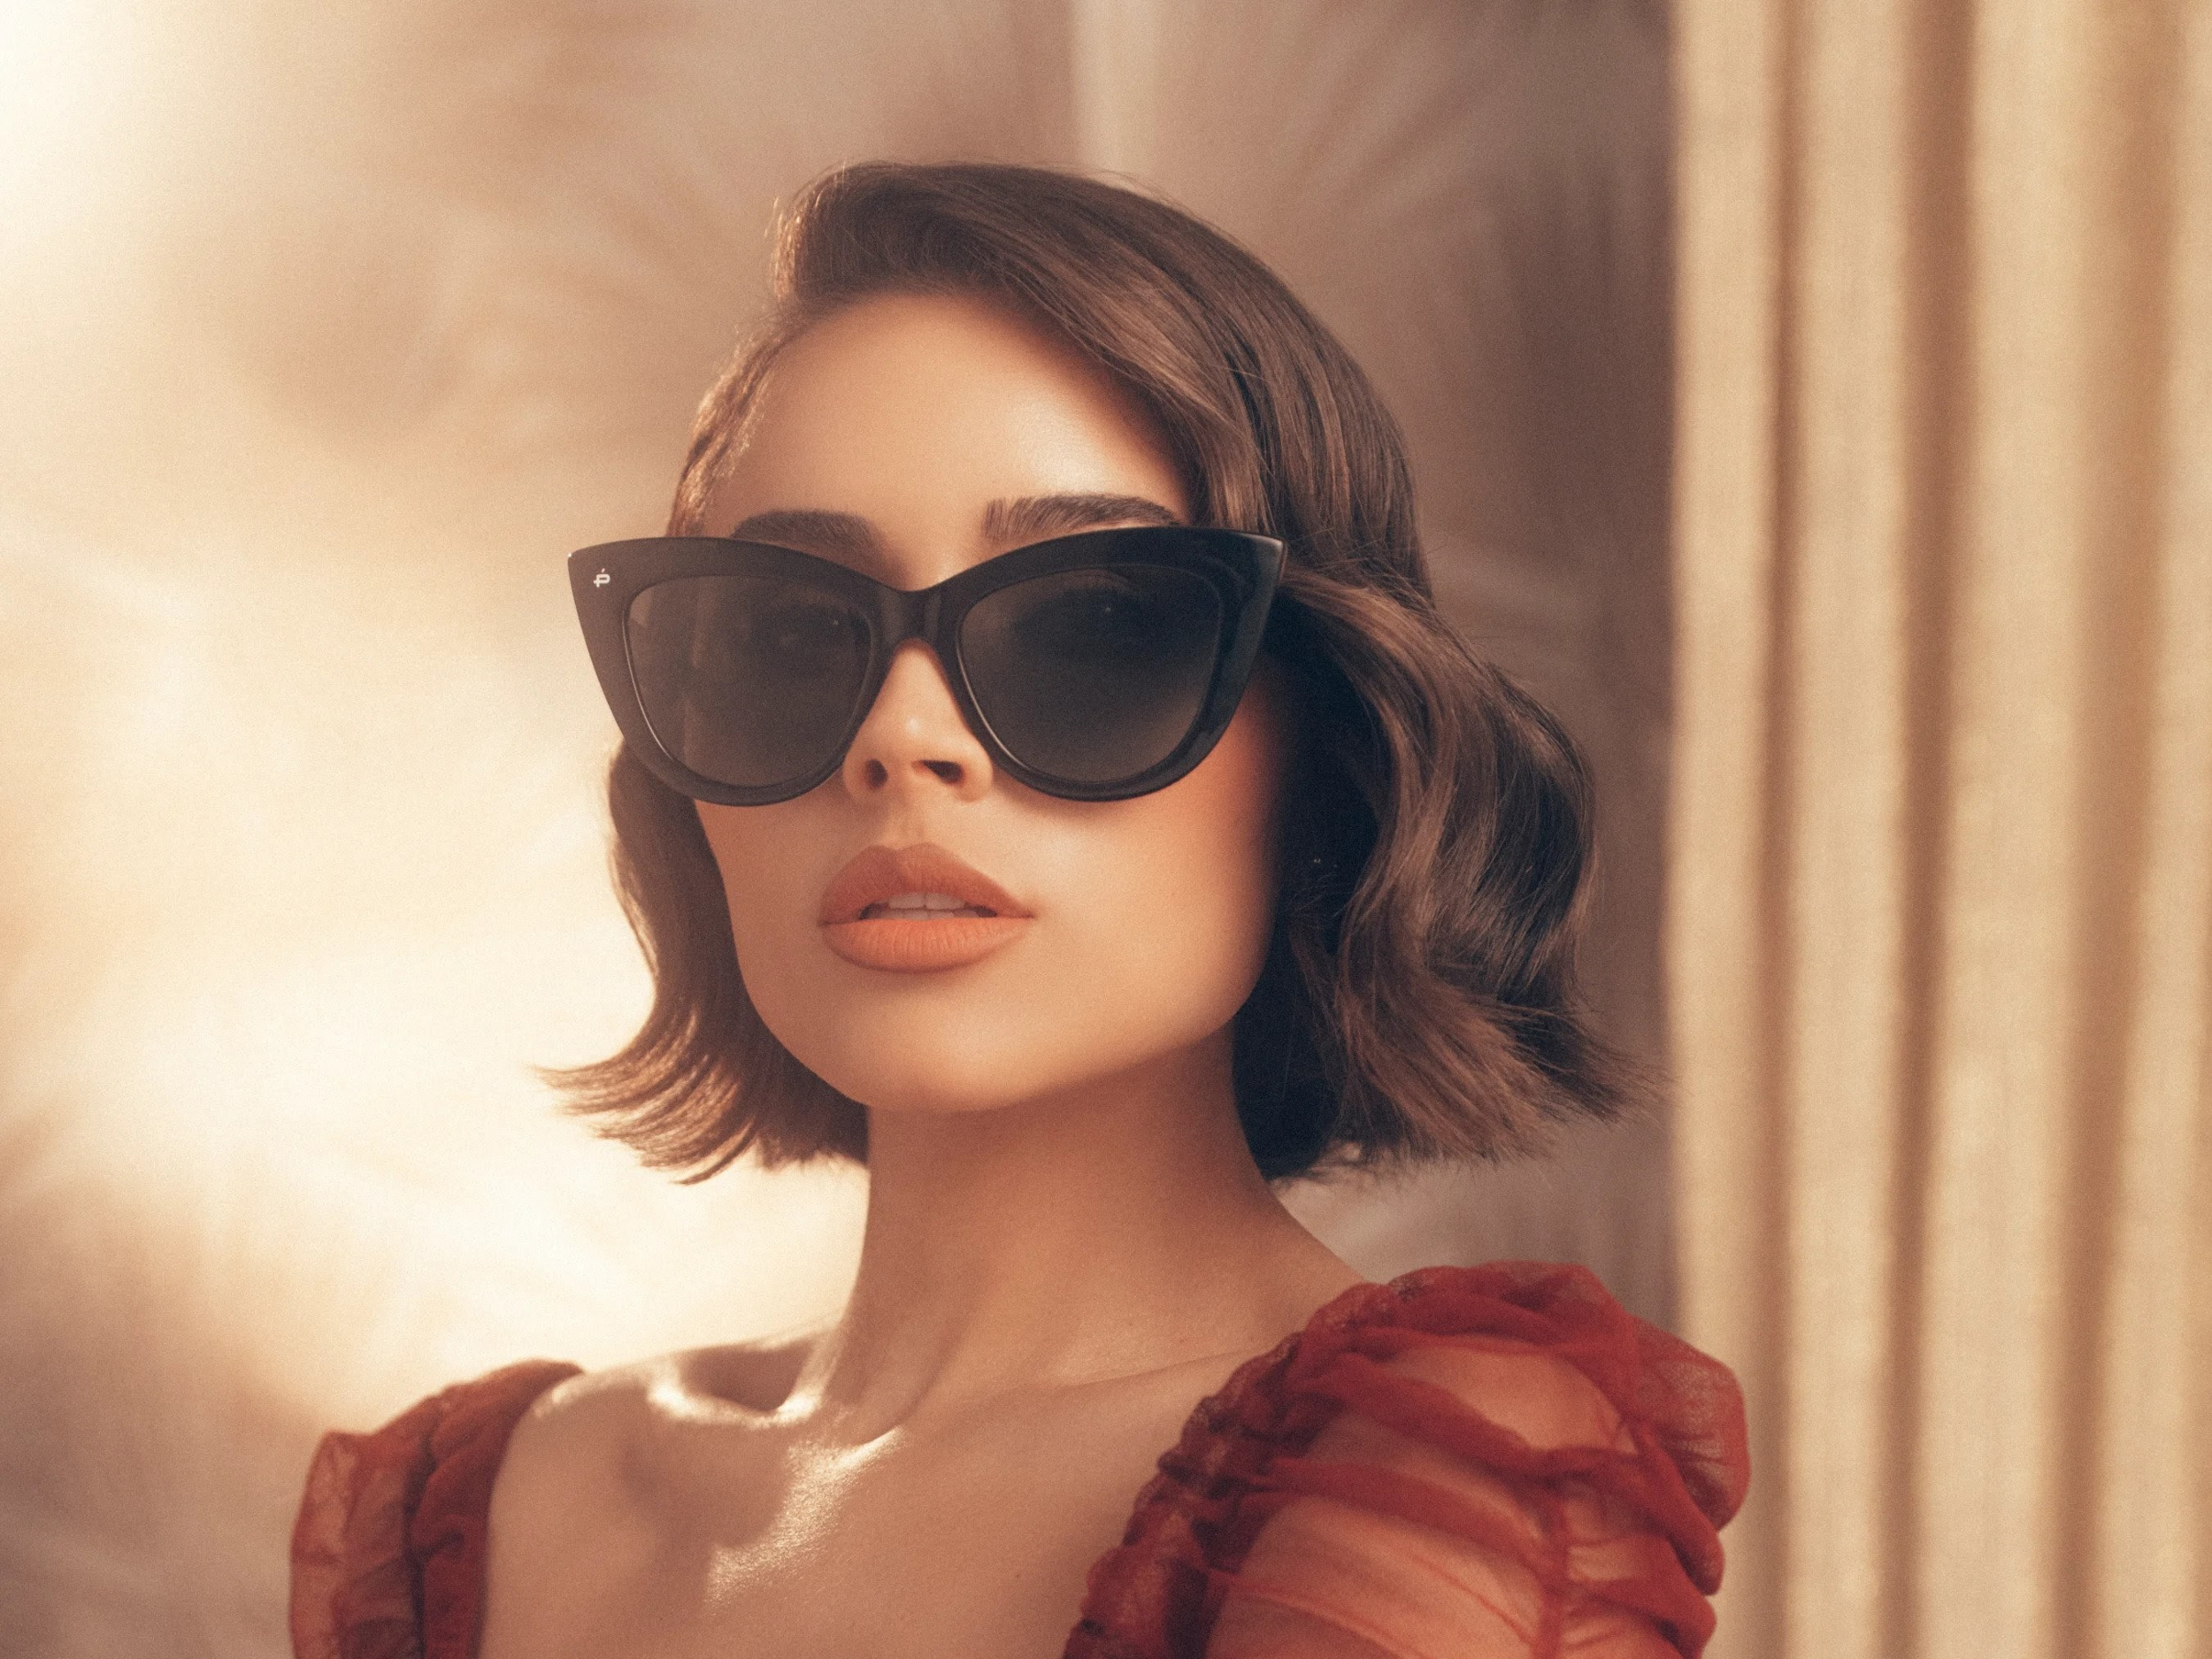 American Model Brunette Short Hair Face Sunglasses 2500x1875